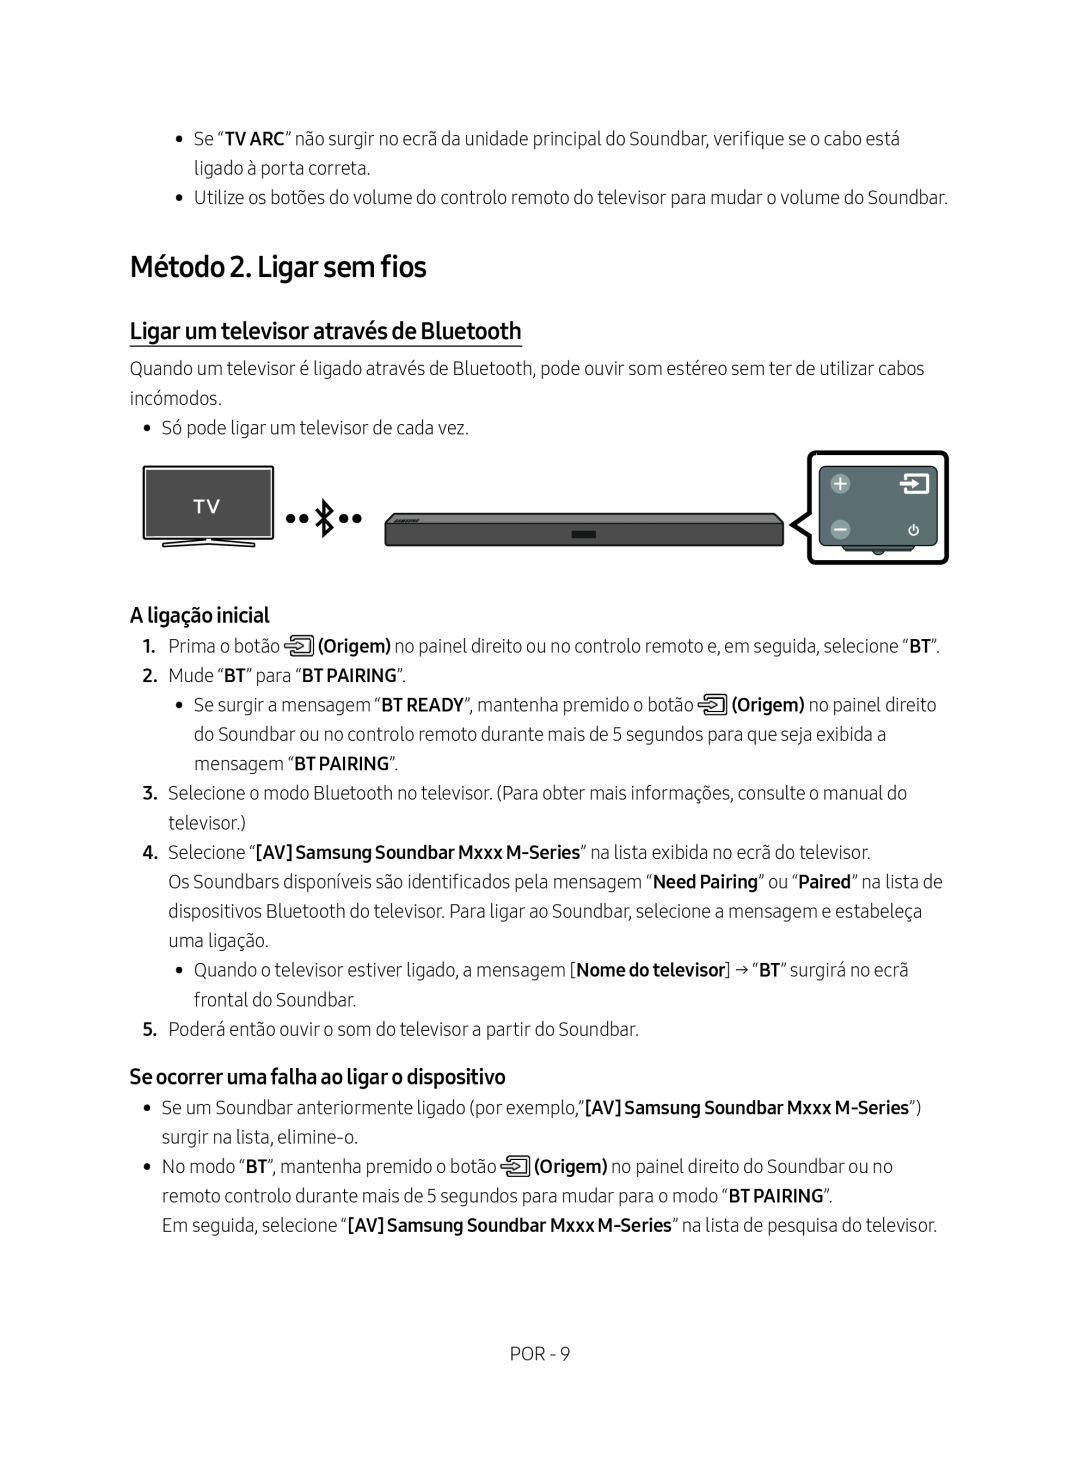 Samsung HW-M450/ZG, HW-M450/EN manual Método 2. Ligar sem fios, Ligar um televisor através de Bluetooth, A ligação inicial 